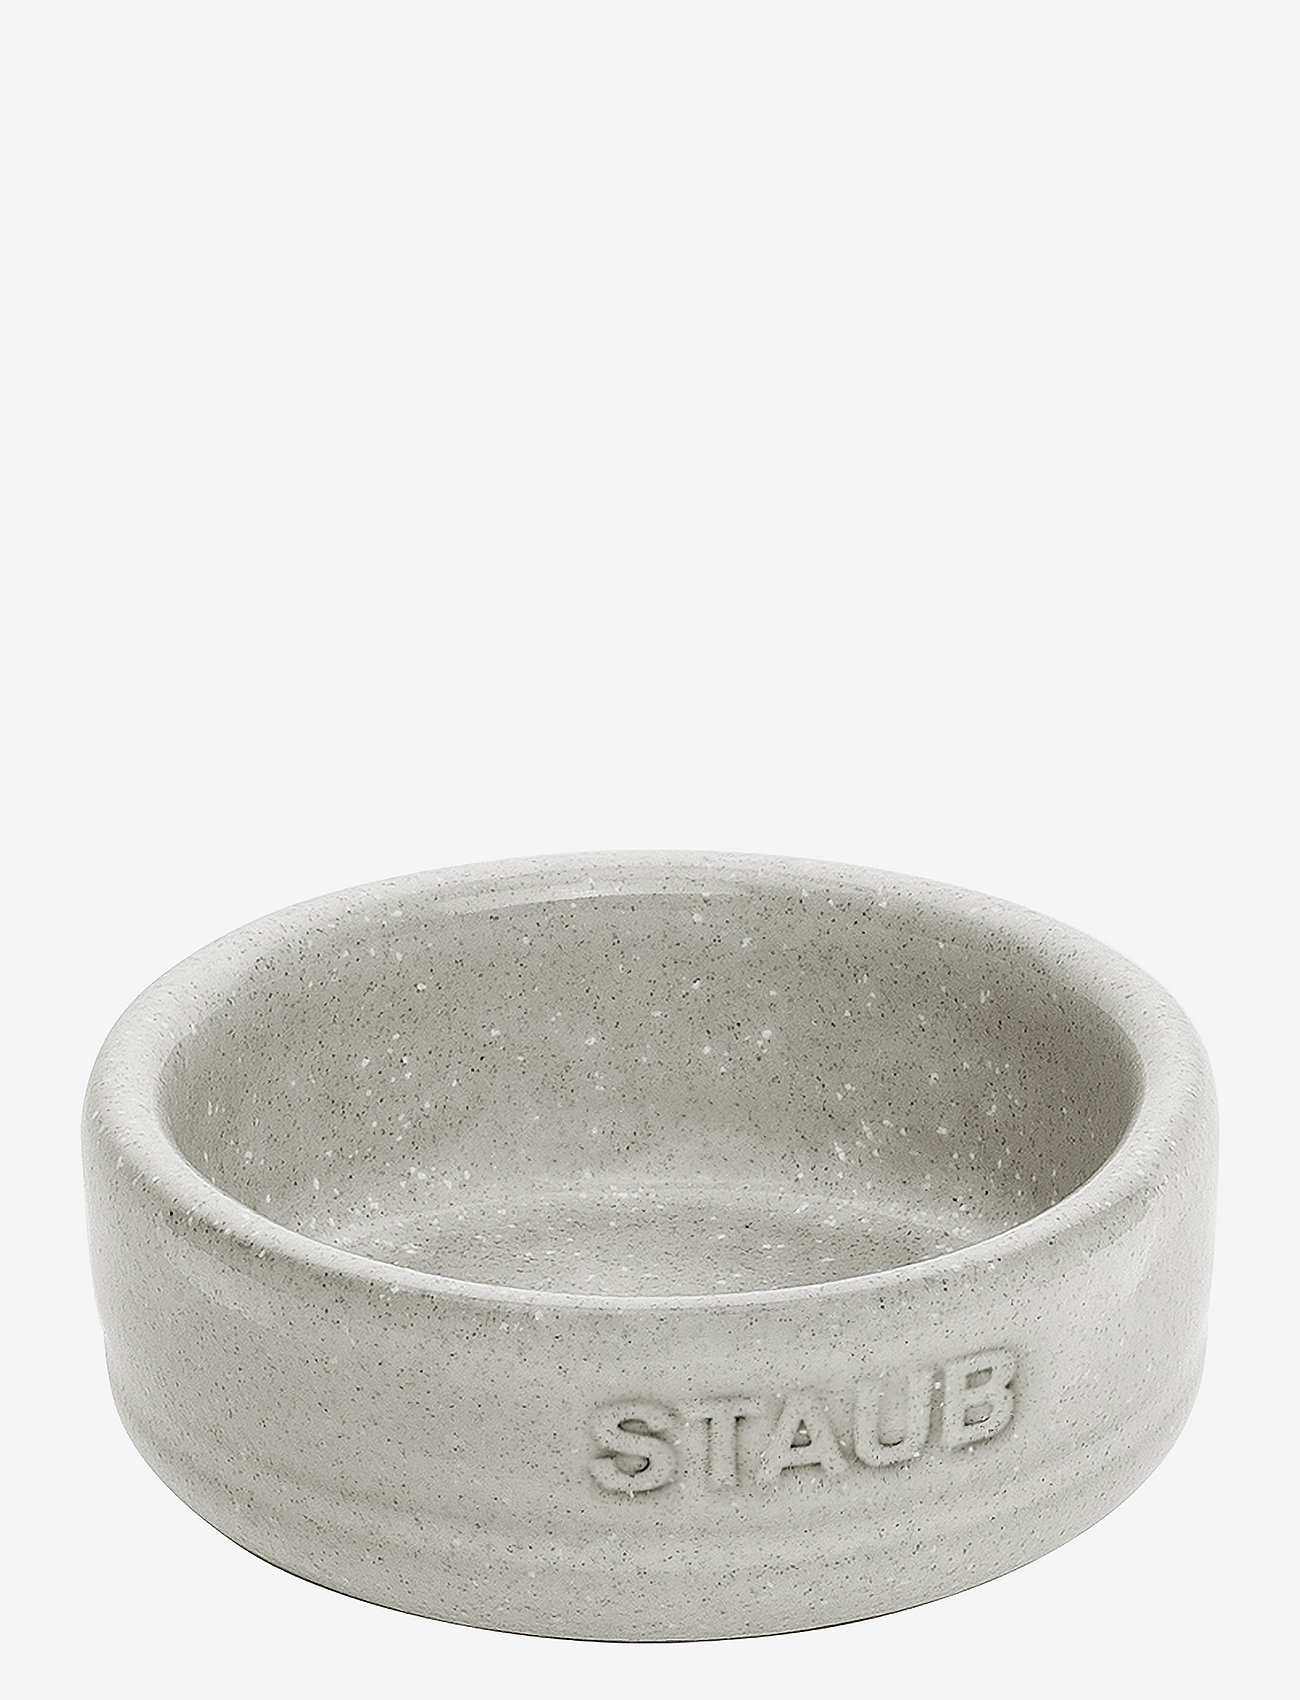 STAUB - Skålsett Hvit trøffel - de laveste prisene - grey - 0